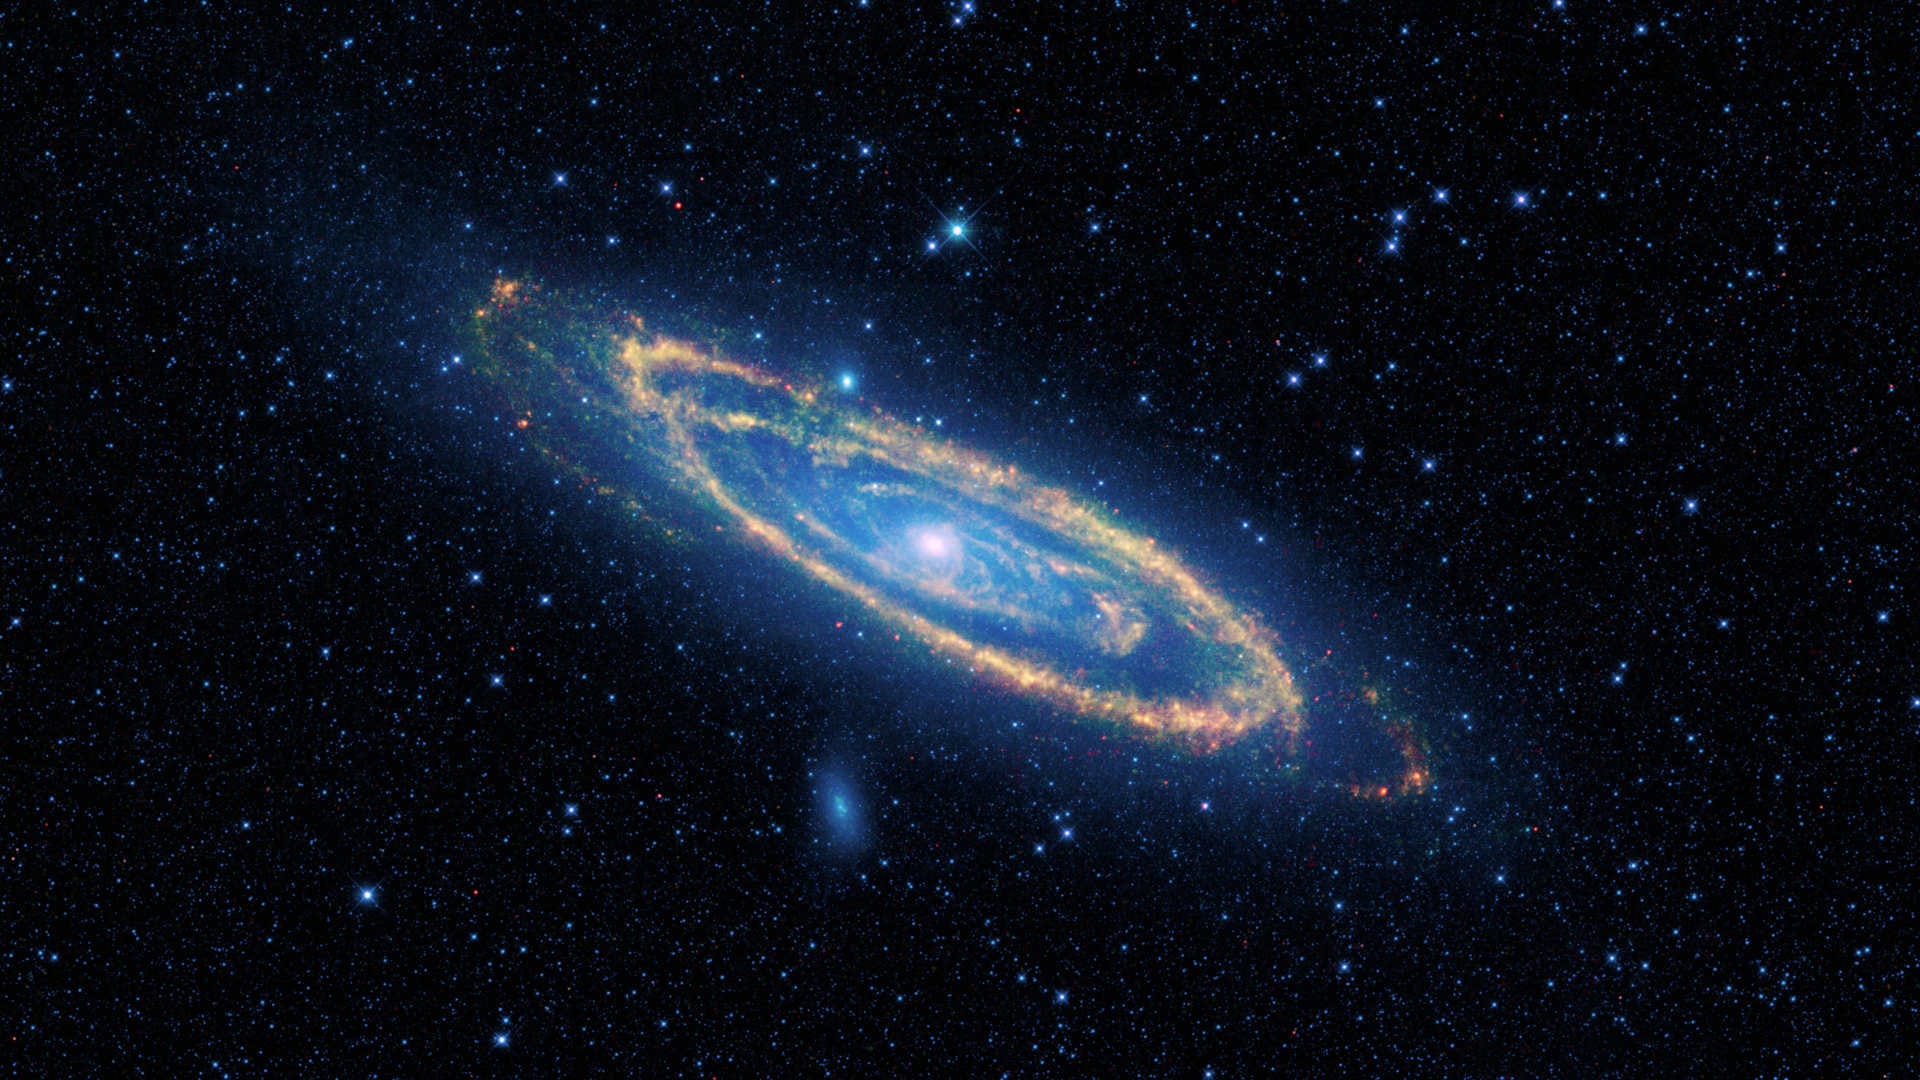 A Galáxia de Andrômeda (M31) – Observando a galáxia gigante em noites sem lua